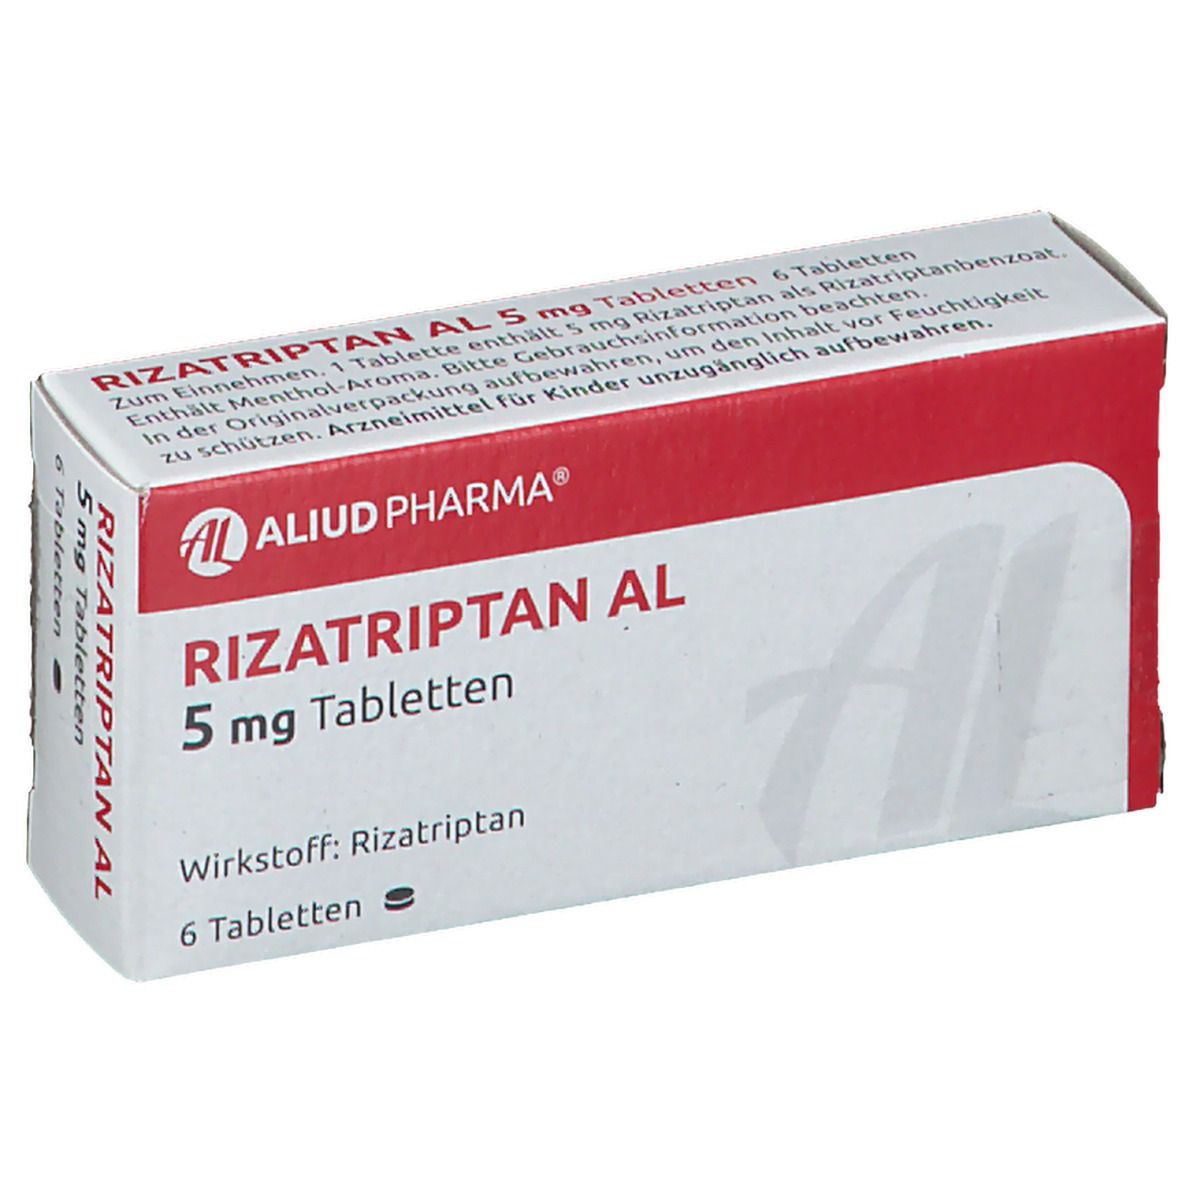 Rizatriptan AL 5 mg